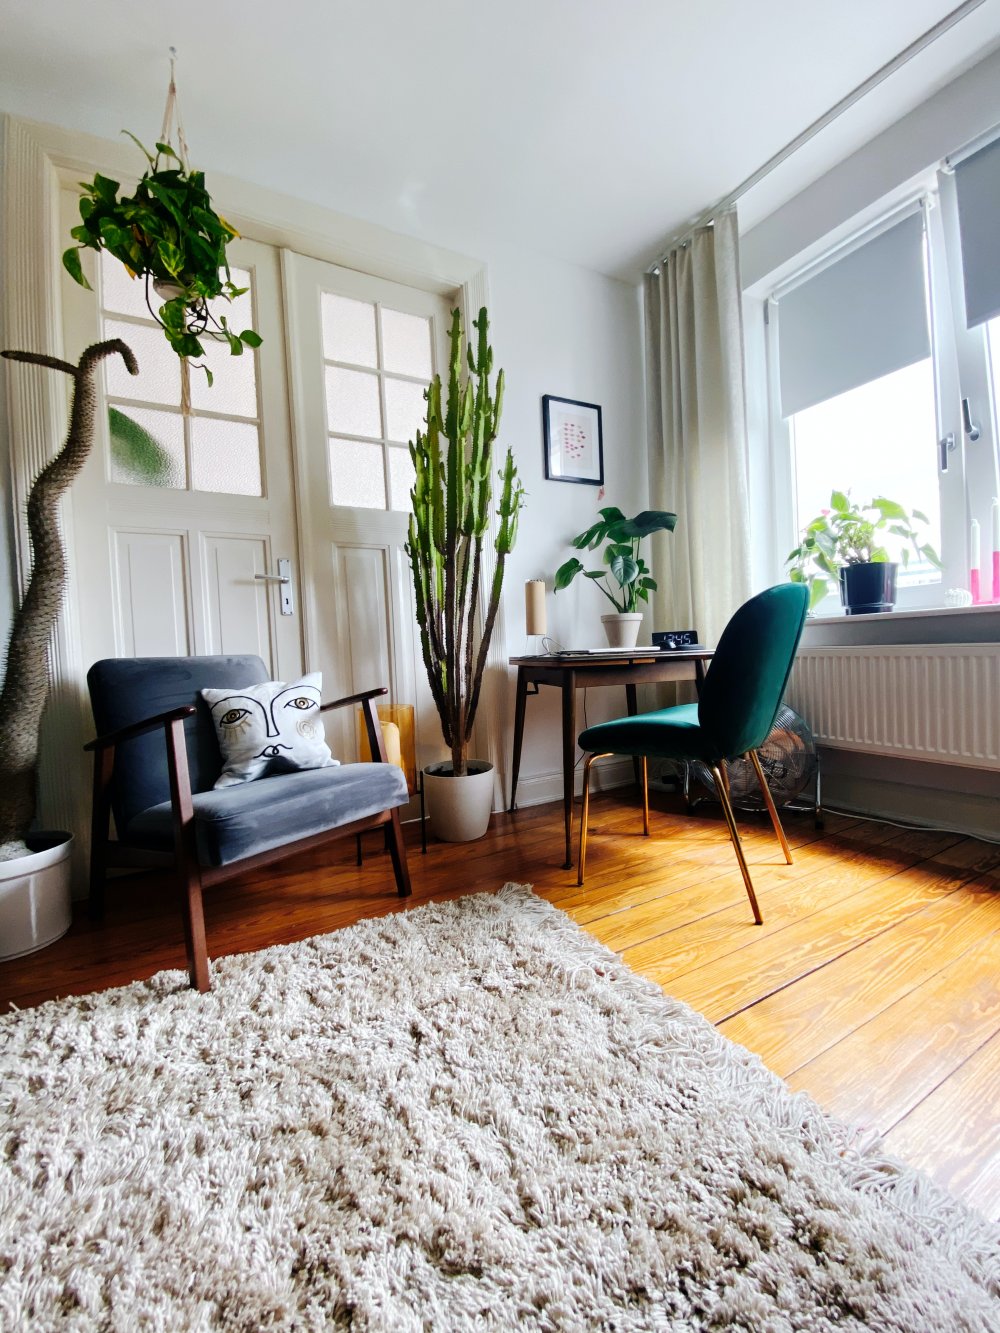 Pflanzenständer – damit Sie die grüne Ecke in Ihrer Wohnung frei wählen können